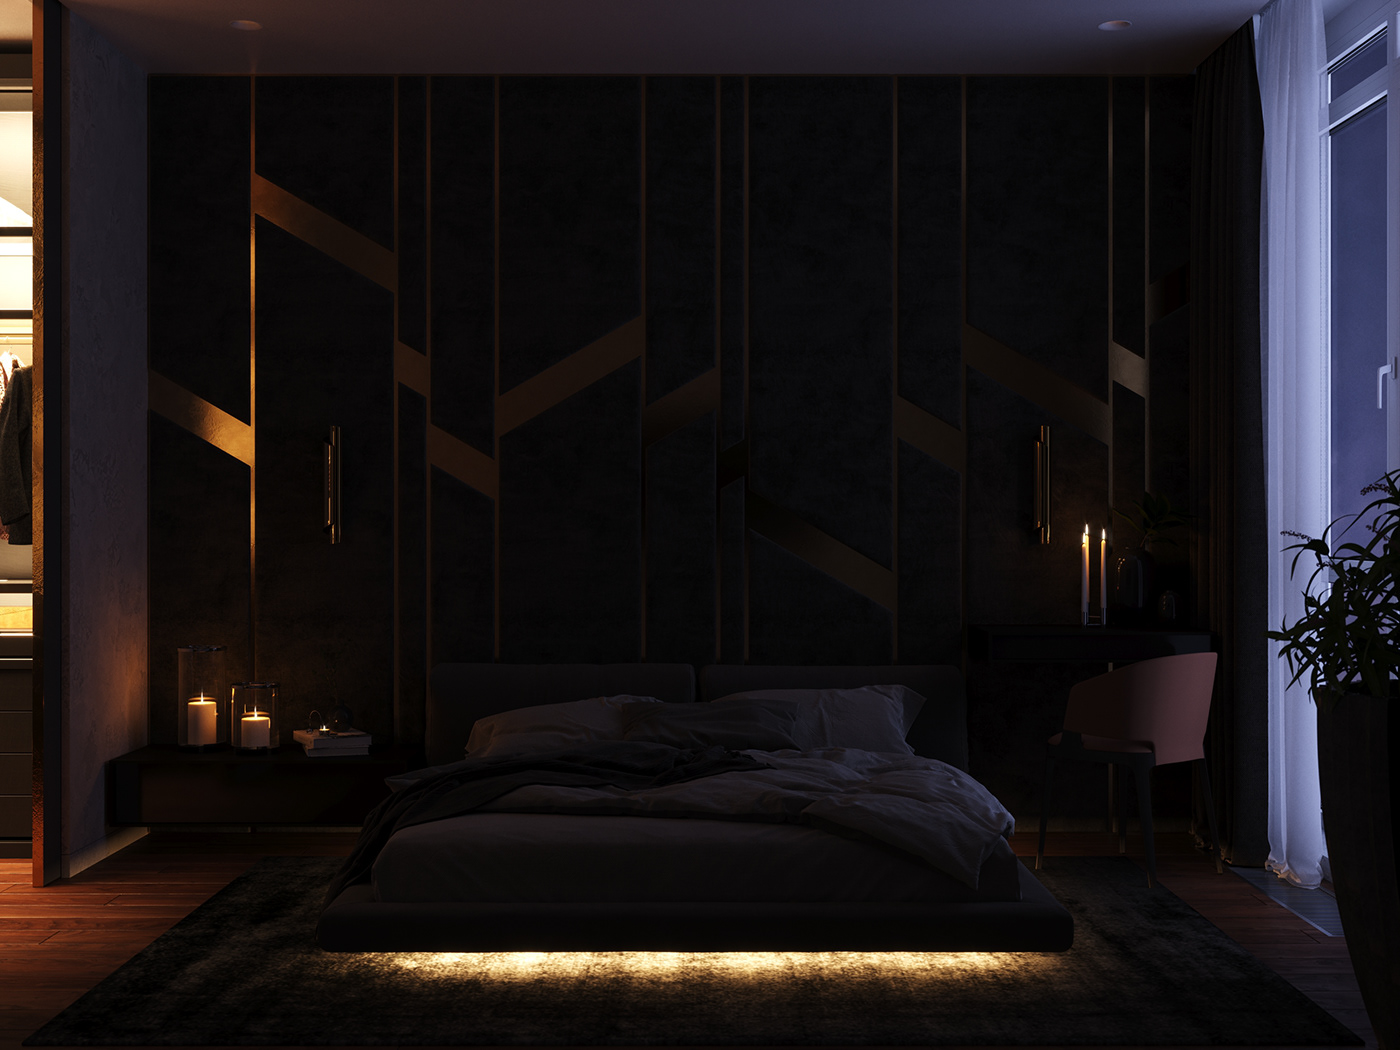 Dark Bedroom on Behance